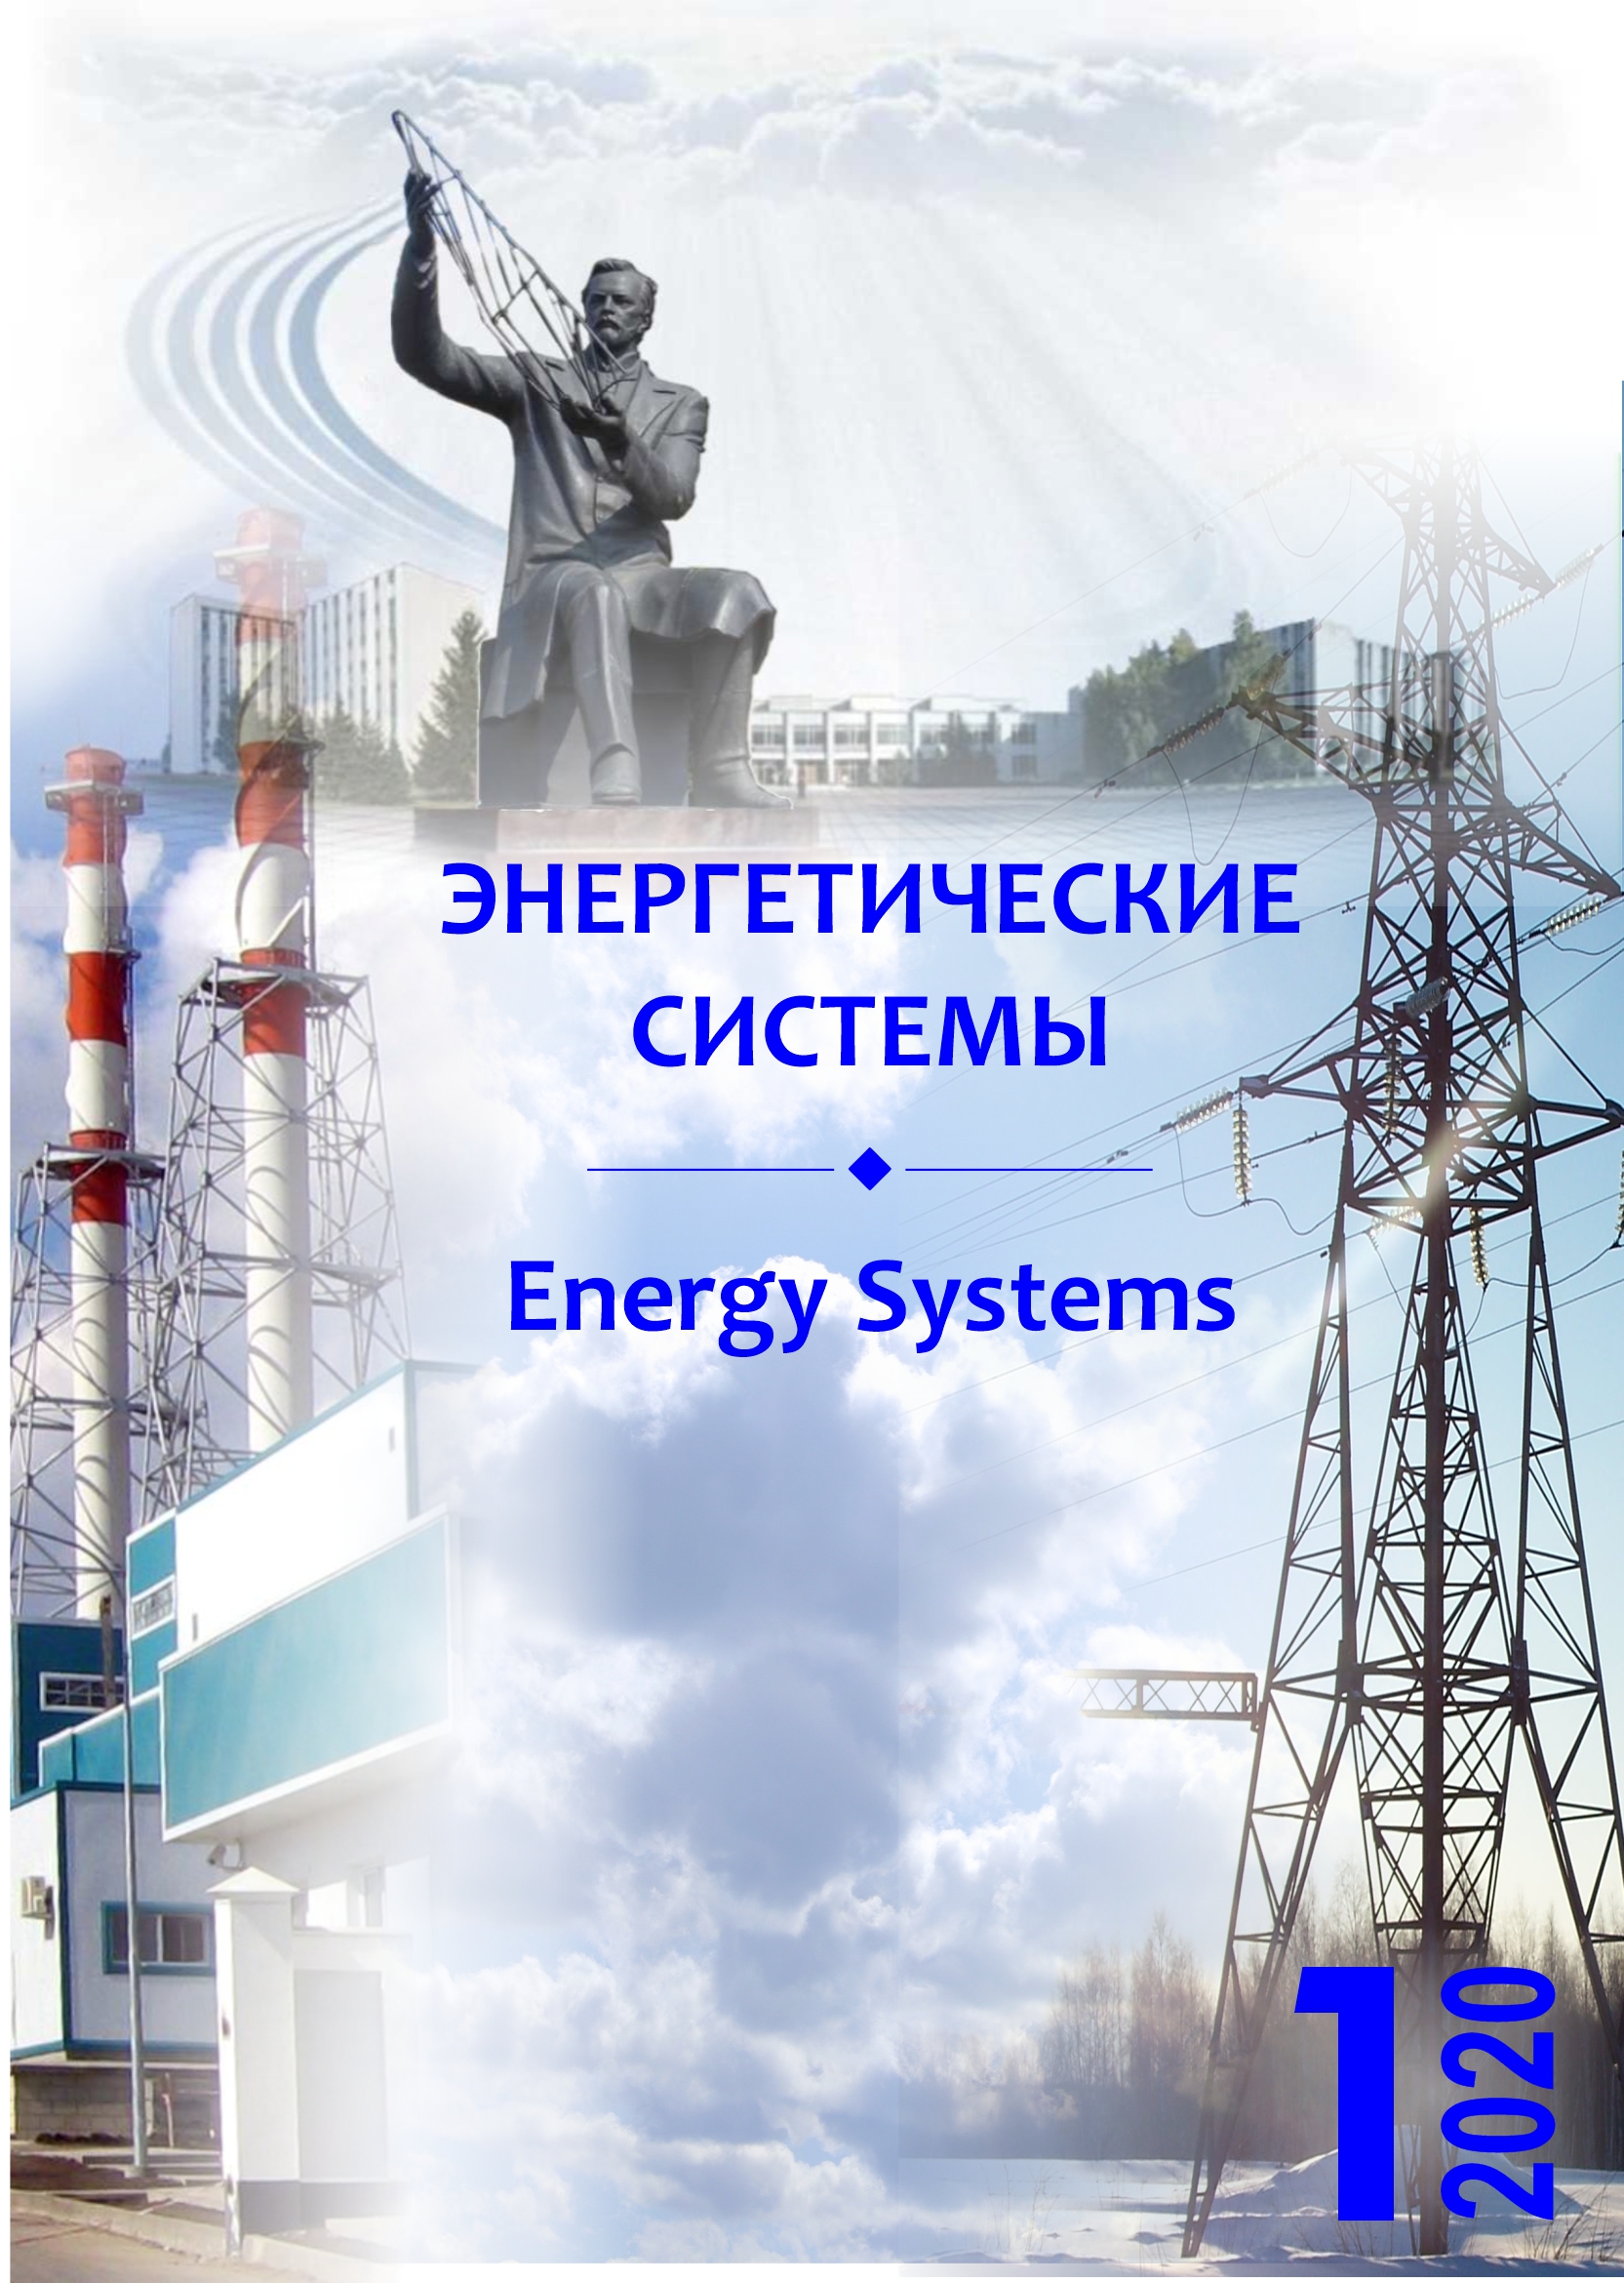 					Показать Том 5 № 1 (2020): V международная научно-техническая конференция «Энергетические системы» (ICES-2020)
				